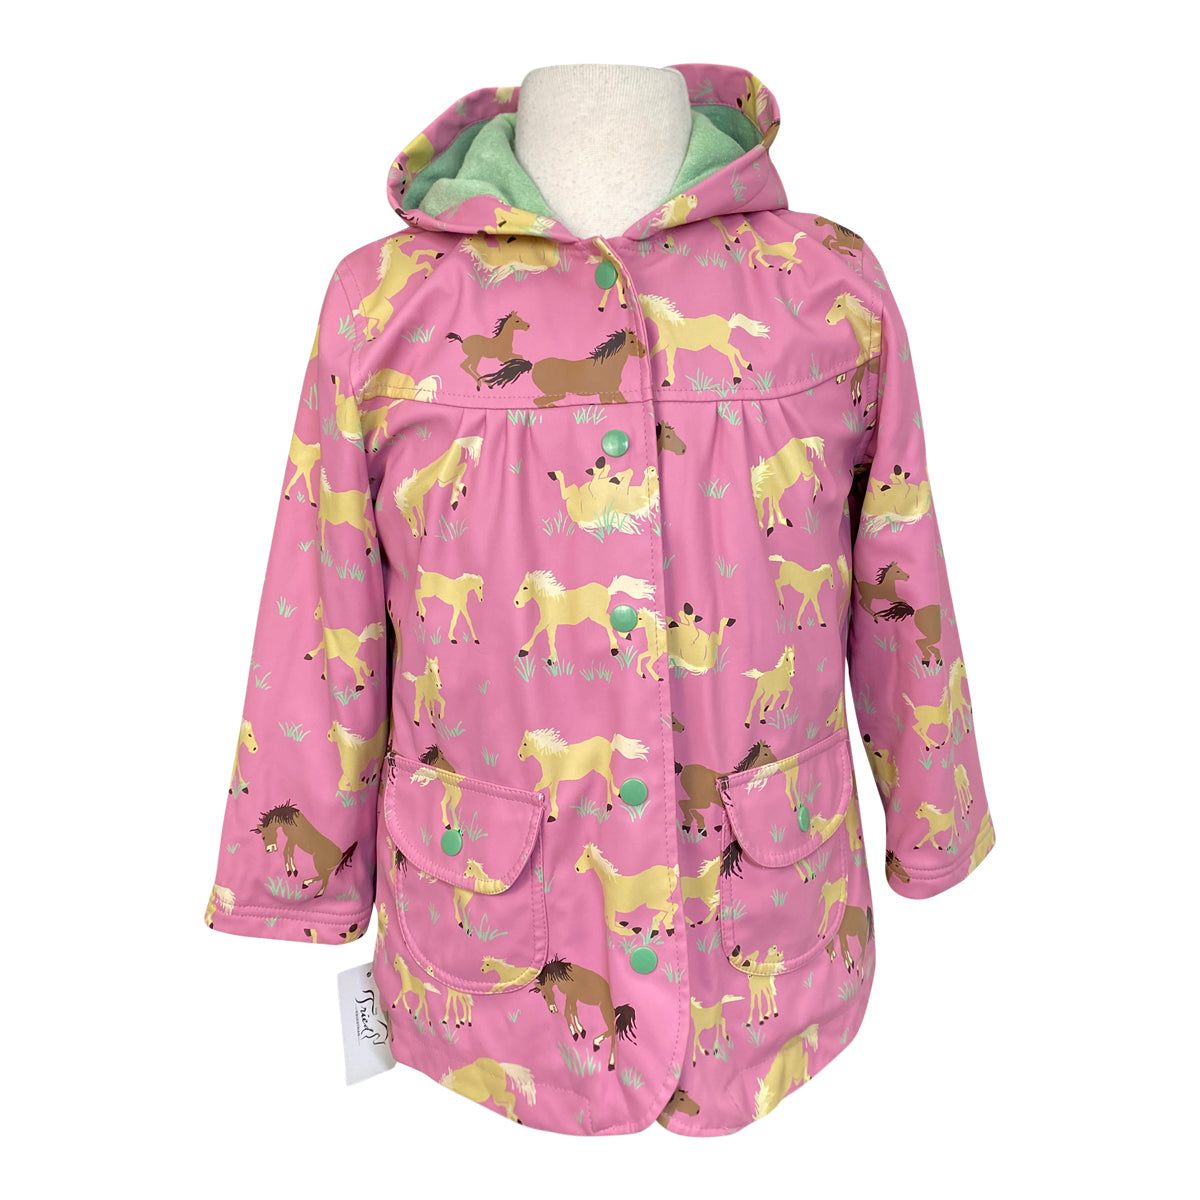 Hatley 'Pasture' Raincoat in Light Pink